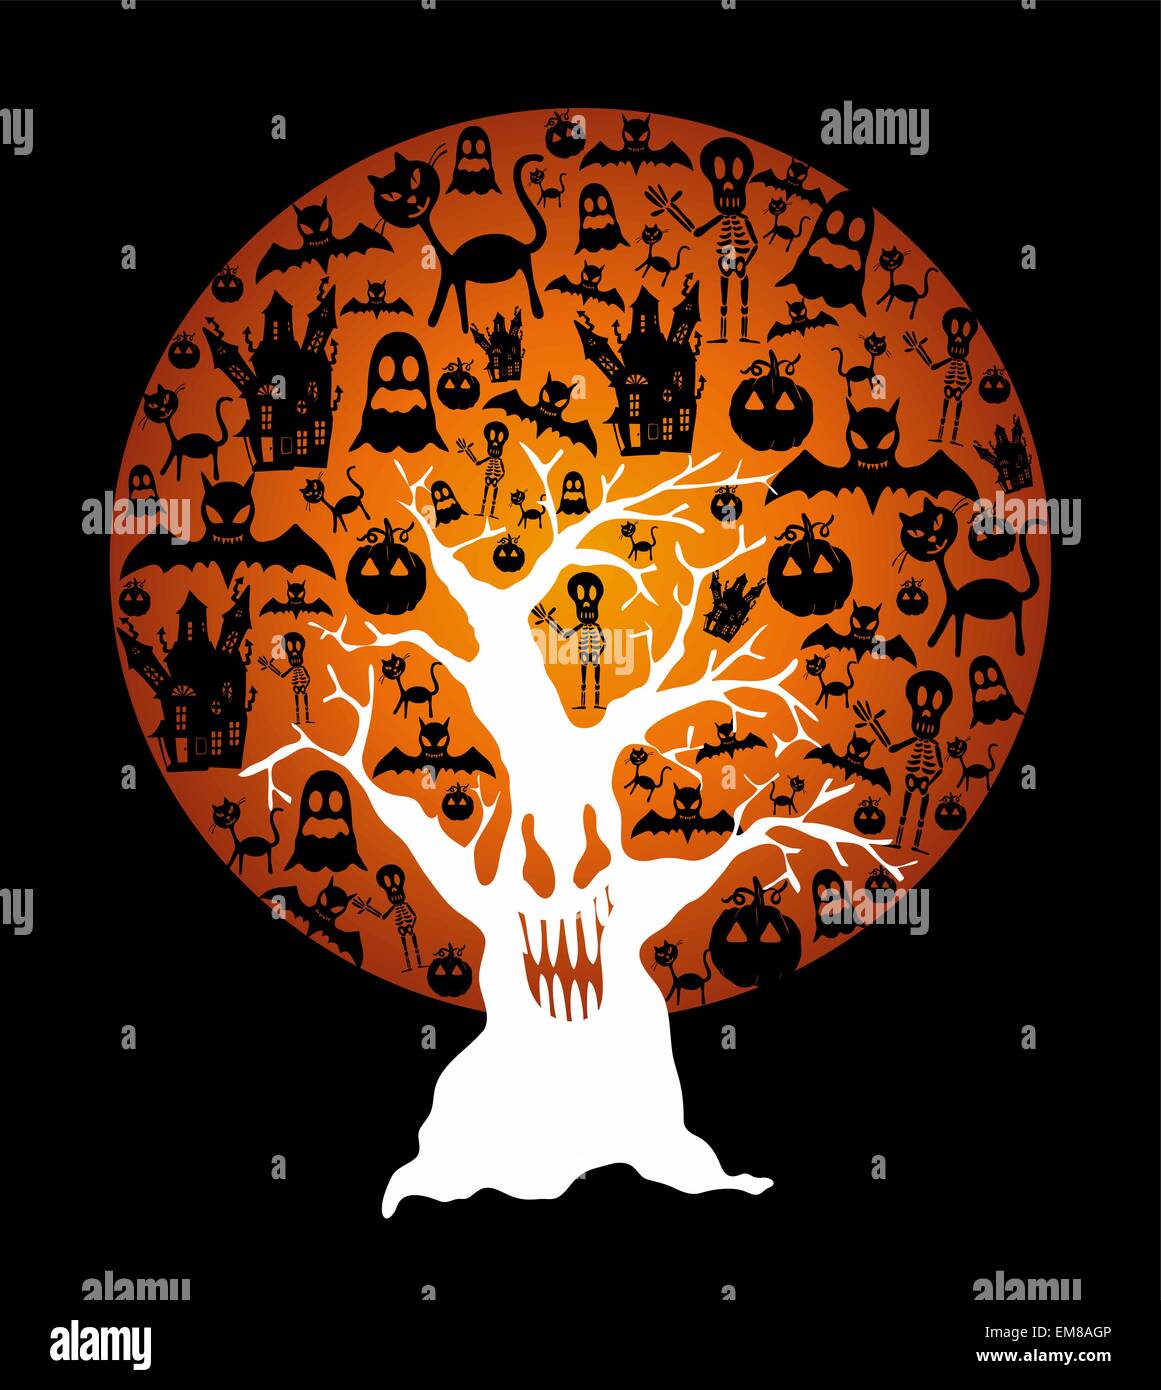 Happy Halloween-Vollmond und schauriger Baum Abbildung EPS10 fil Stock Vektor